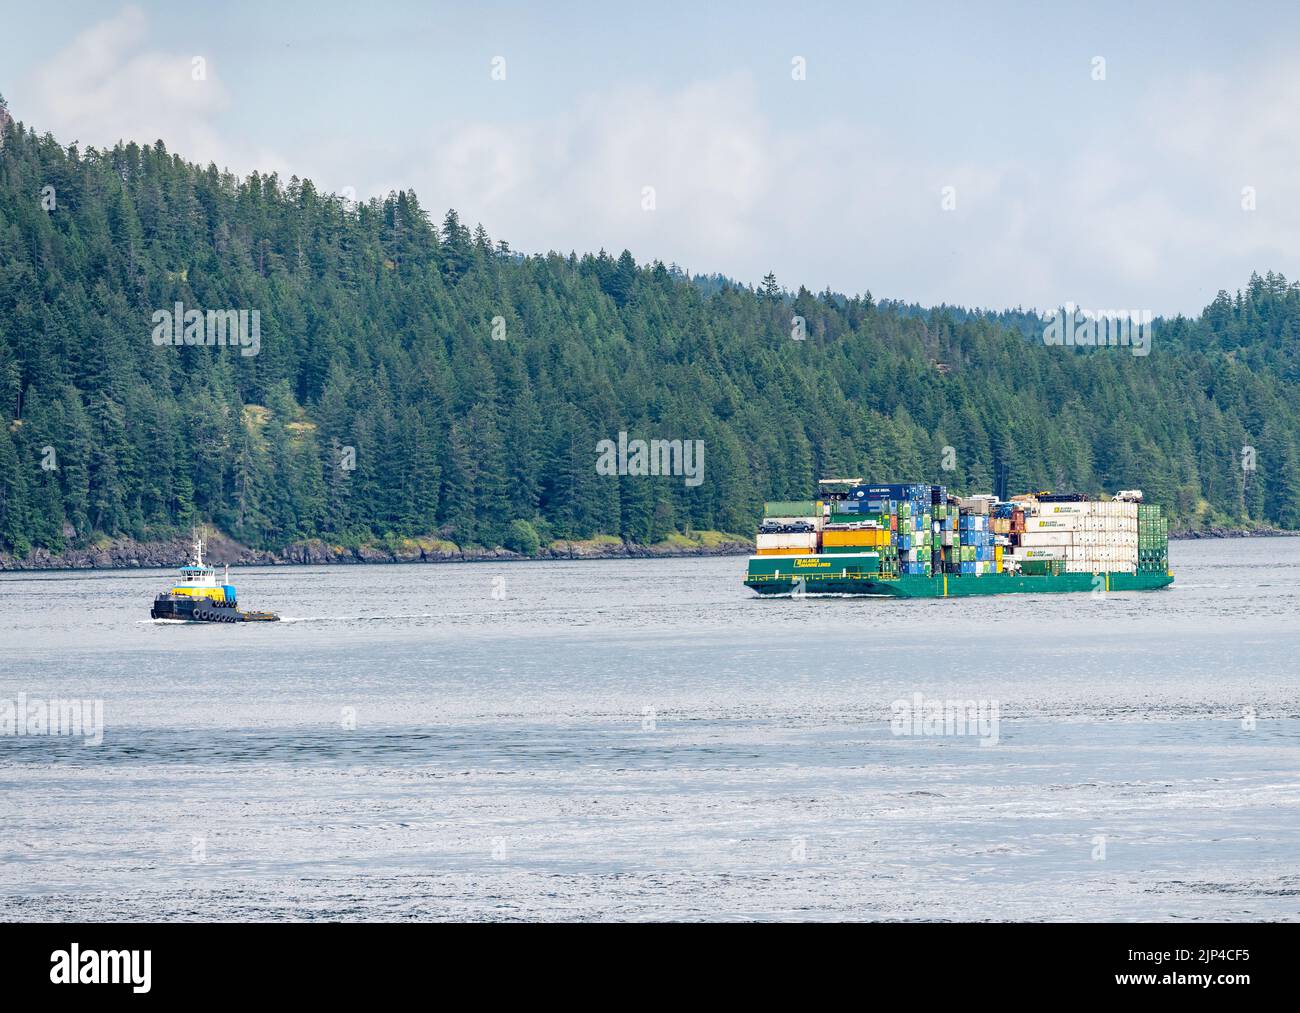 Campbell River, BC - 11 de junio de 2022: Contenedores apilados en la barcaza de Alaska Marine Lines en Discovery Passage Foto de stock